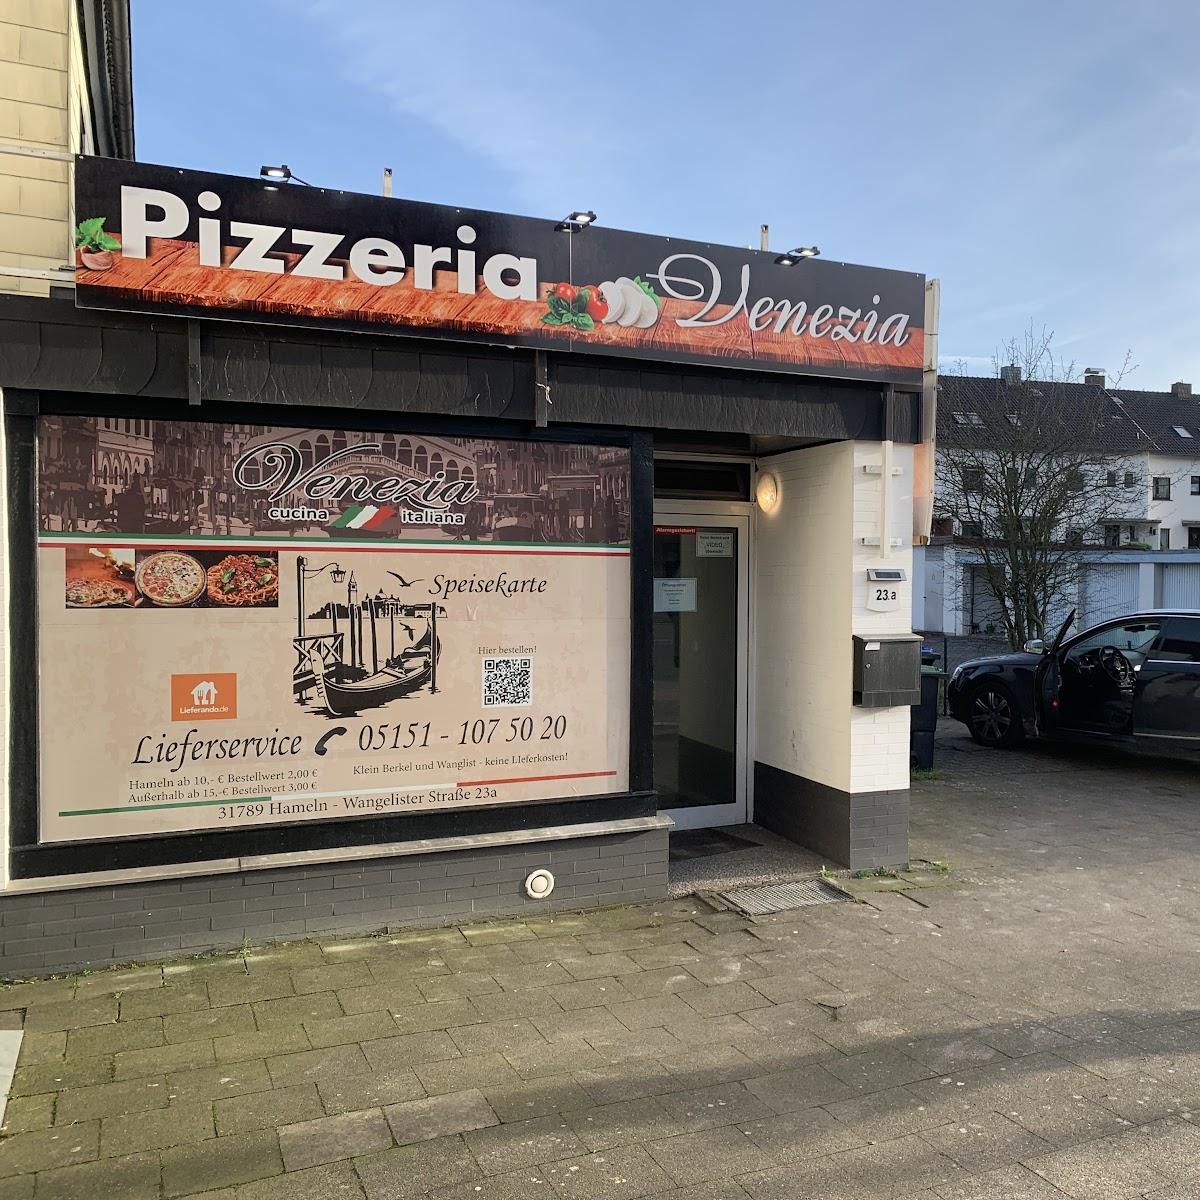 Restaurant "pizzeria VENEZIA" in Hameln